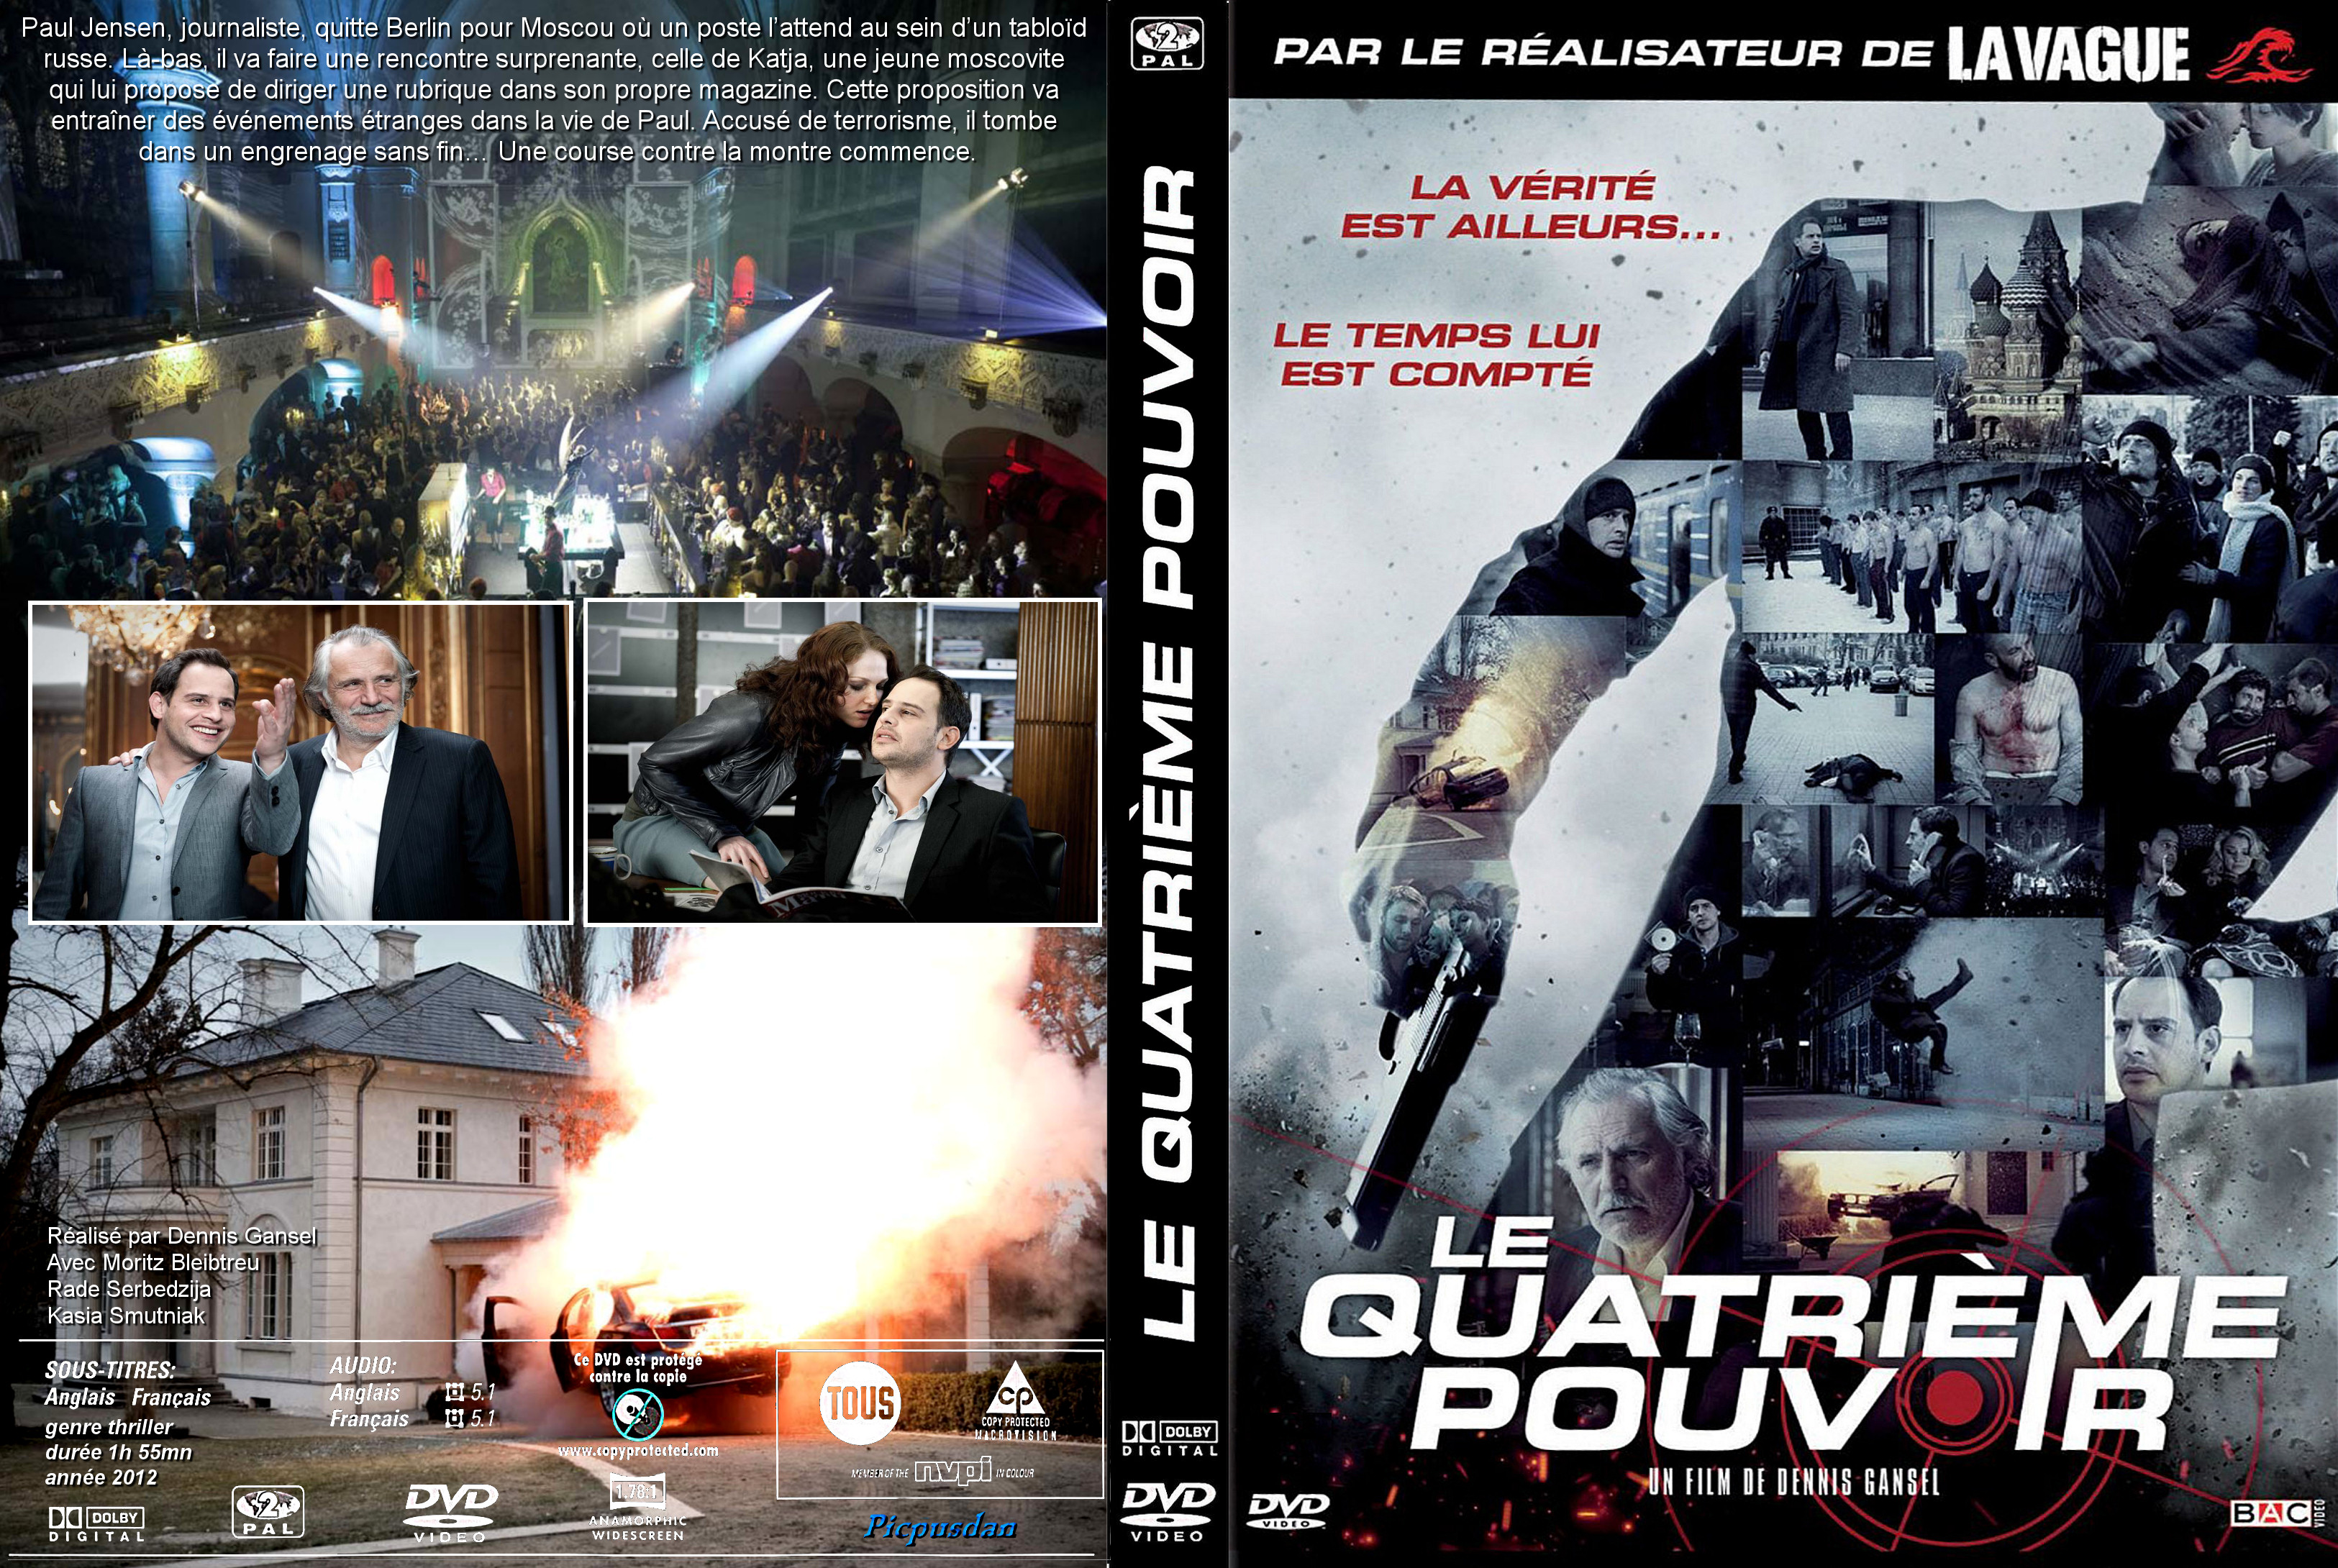 Jaquette DVD Le quatrieme pouvoir (2012) custom